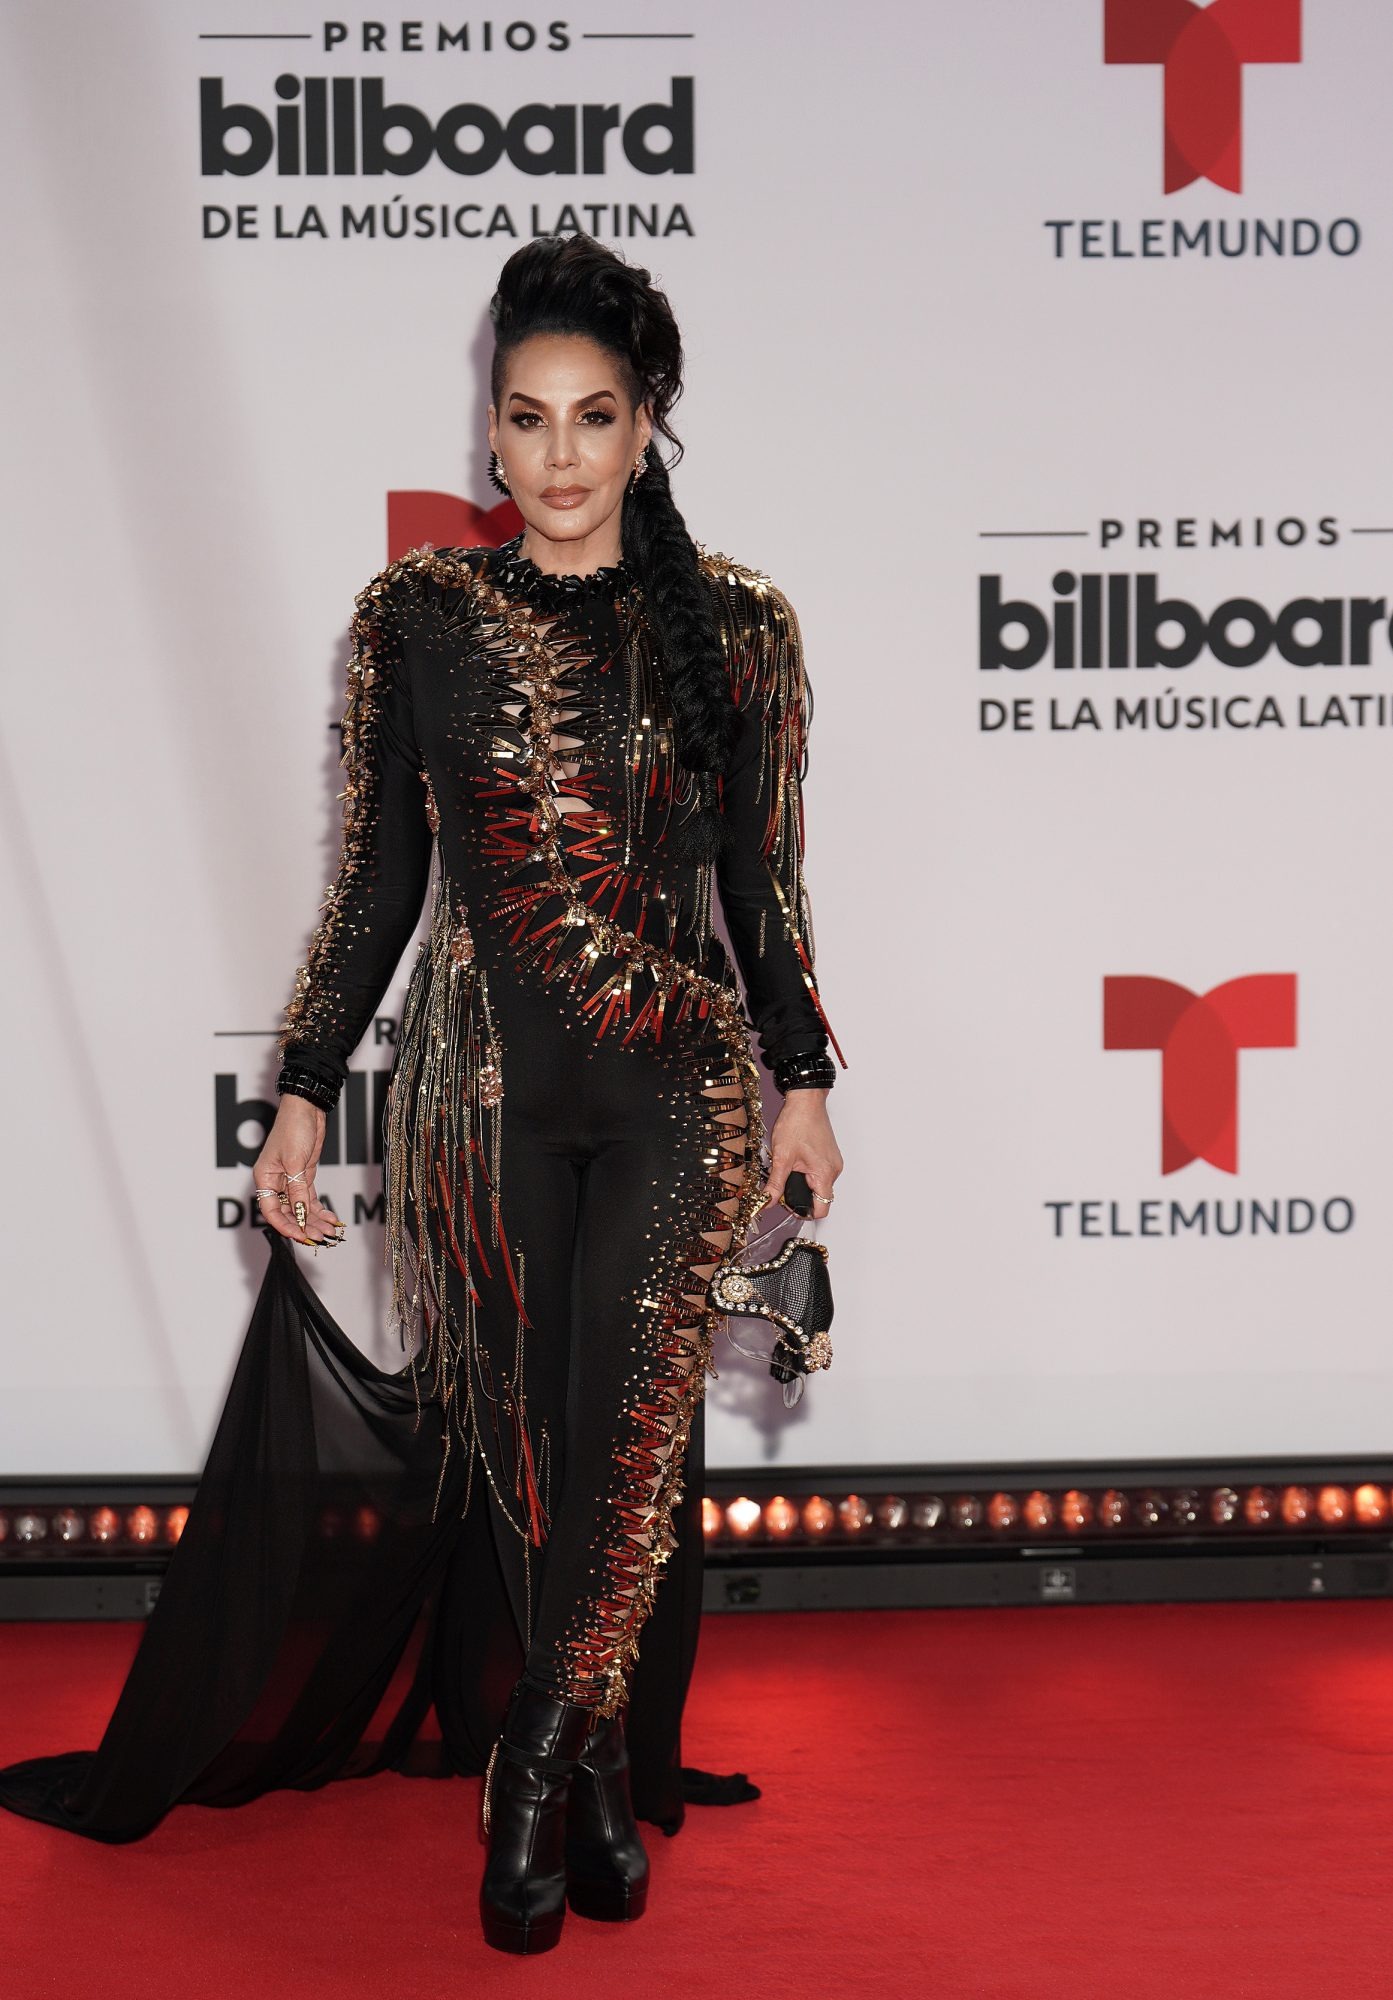 Latin Billboard 2020: ¿Quiénes fueron las mejor vestidas de la gala?